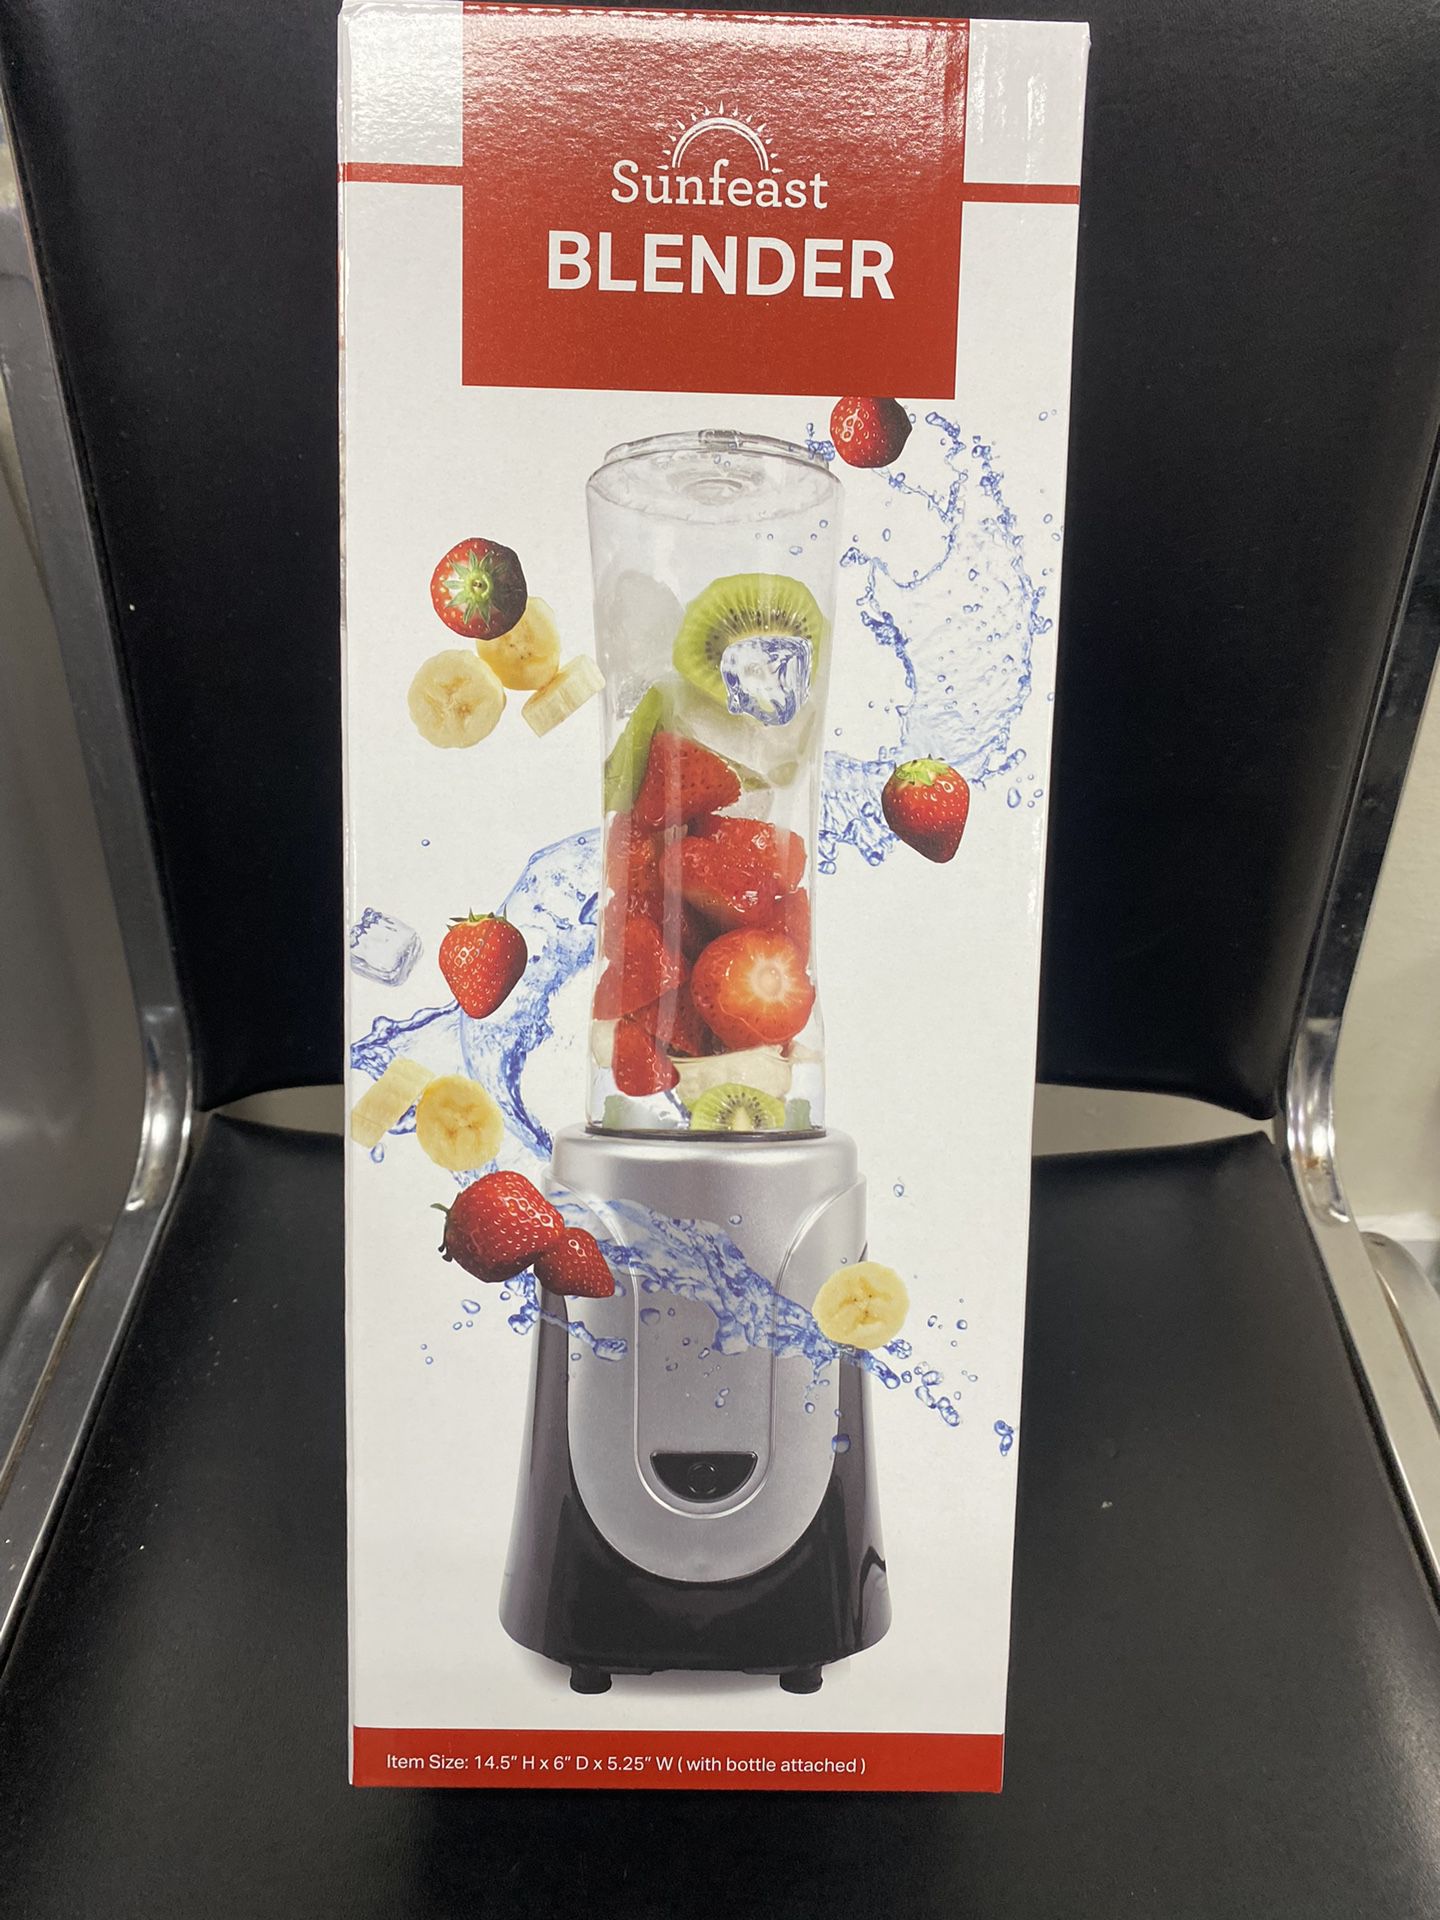 Brand new Nutribullet Smart Touch Blender for Sale in Diamond Bar, CA -  OfferUp